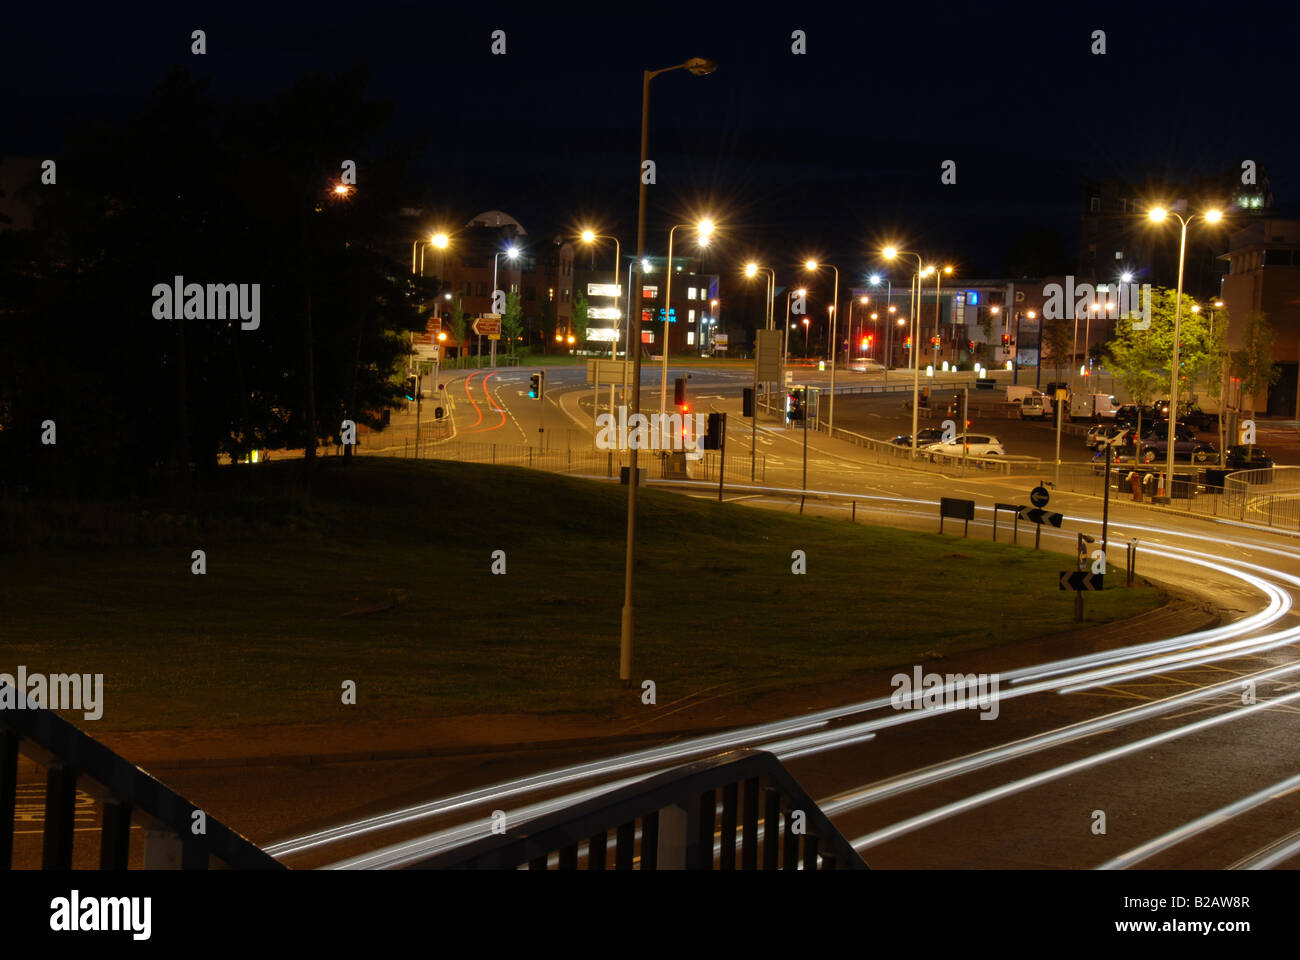 Dundee am Fluss Roundbout Nachtaufnahme Langzeitbelichtung Stockfoto